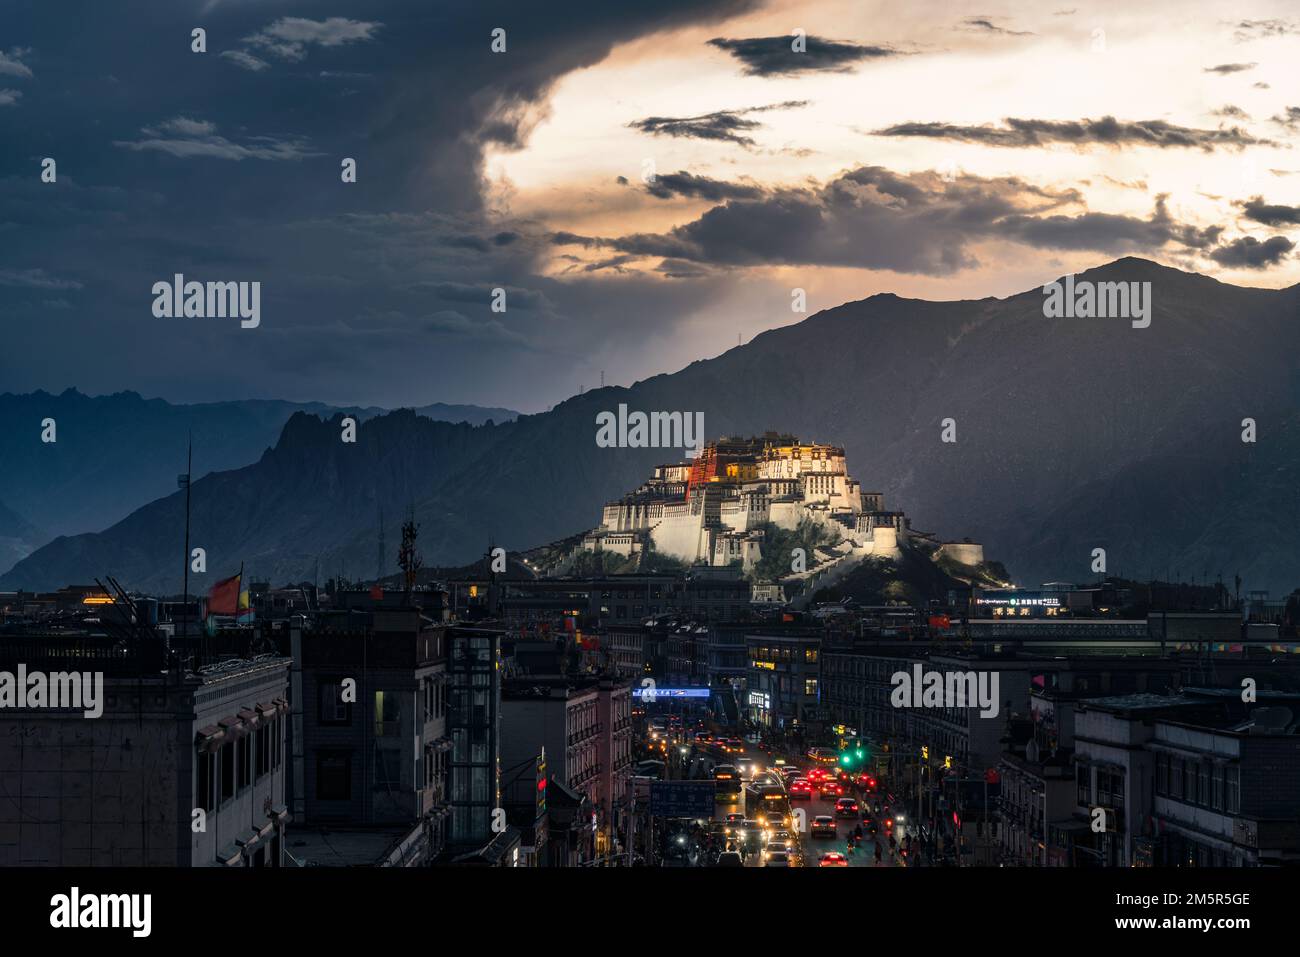 Ein faszinierender Blick auf die Festung Dzong Potala Palast in Lhasa, Tibet, China, bei Sonnenaufgang Stockfoto